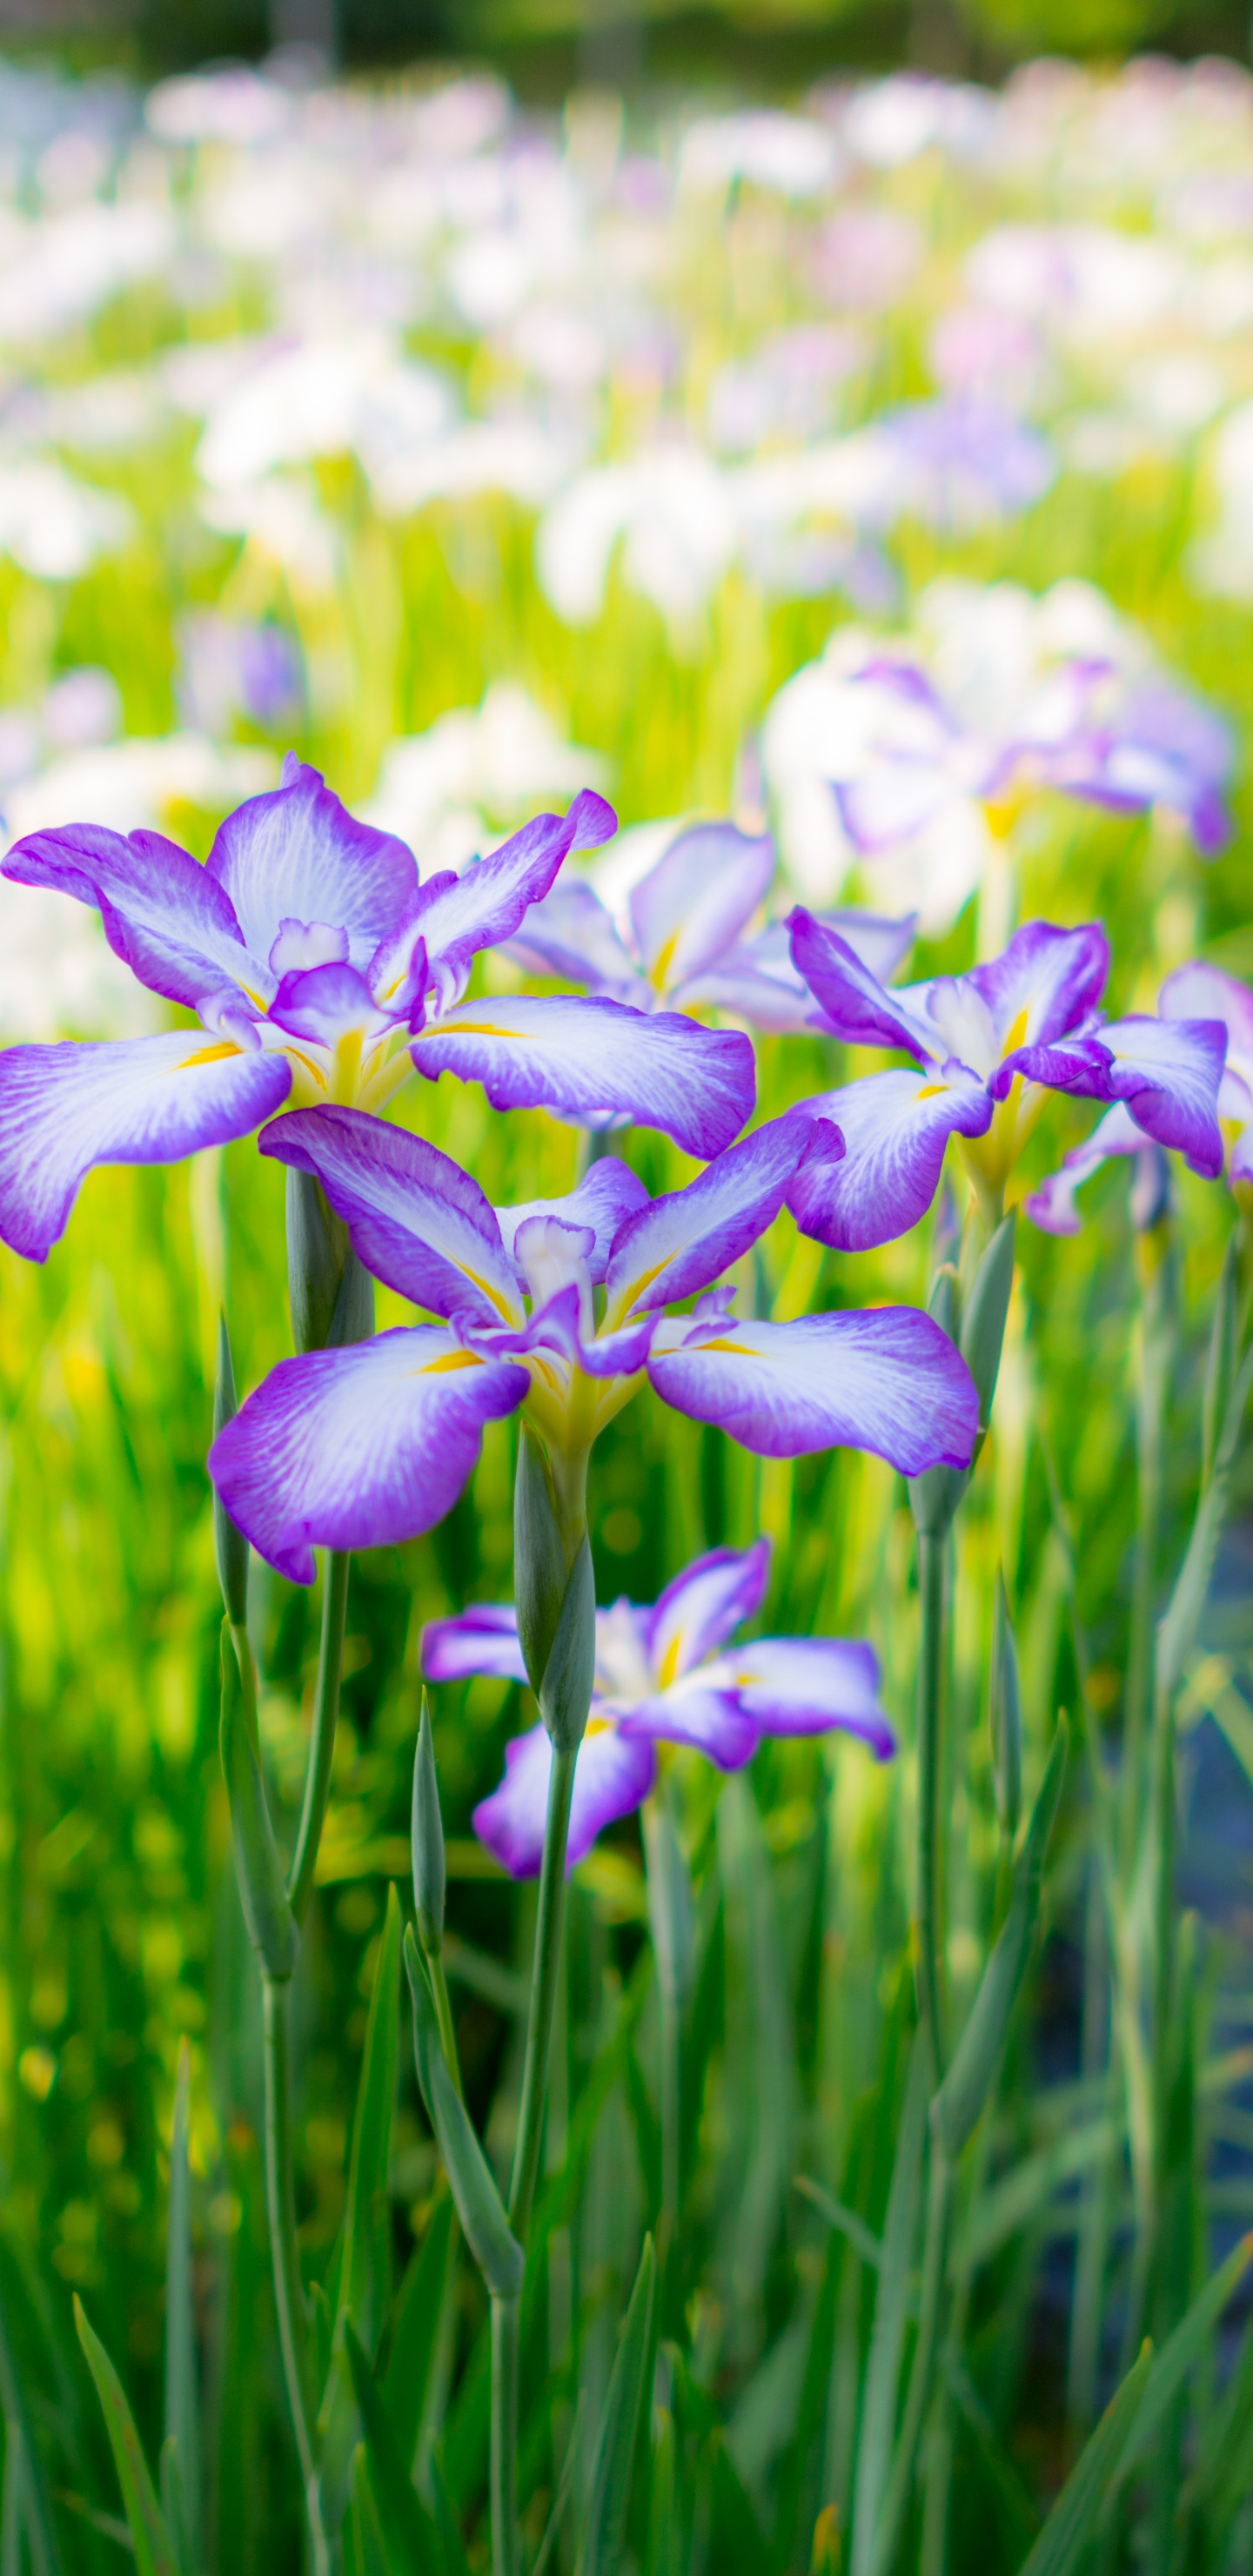 Purple and White Flowers in Tilt Shift Lens. Wallpaper in 1440x2960 Resolution